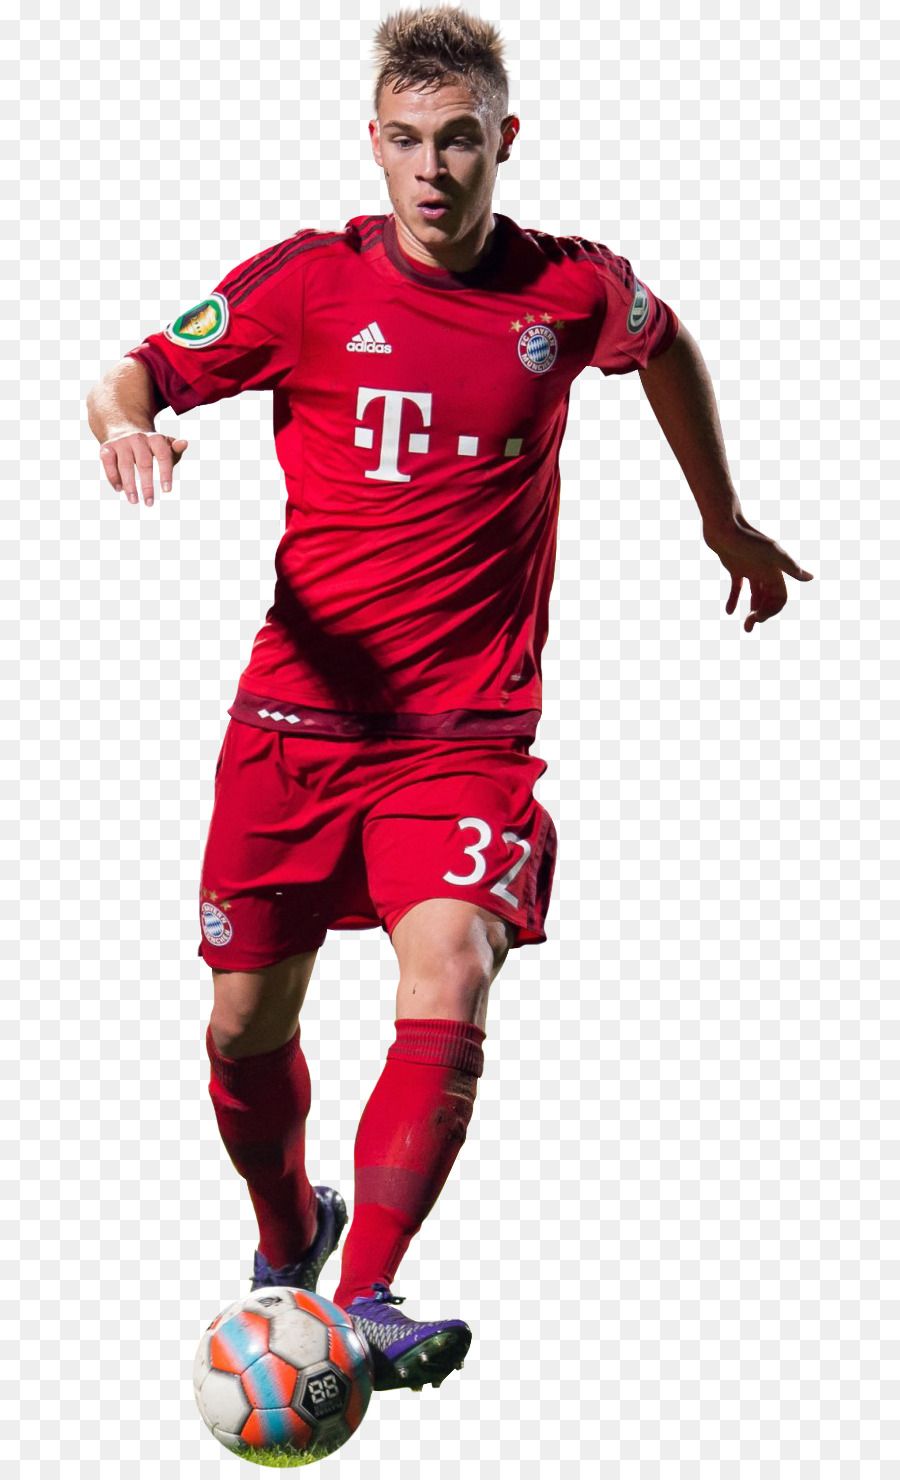 Joshua Kimmich Fc Bayern Munich Rendering Football Joshua Kimmich 6zrcn Image Provided